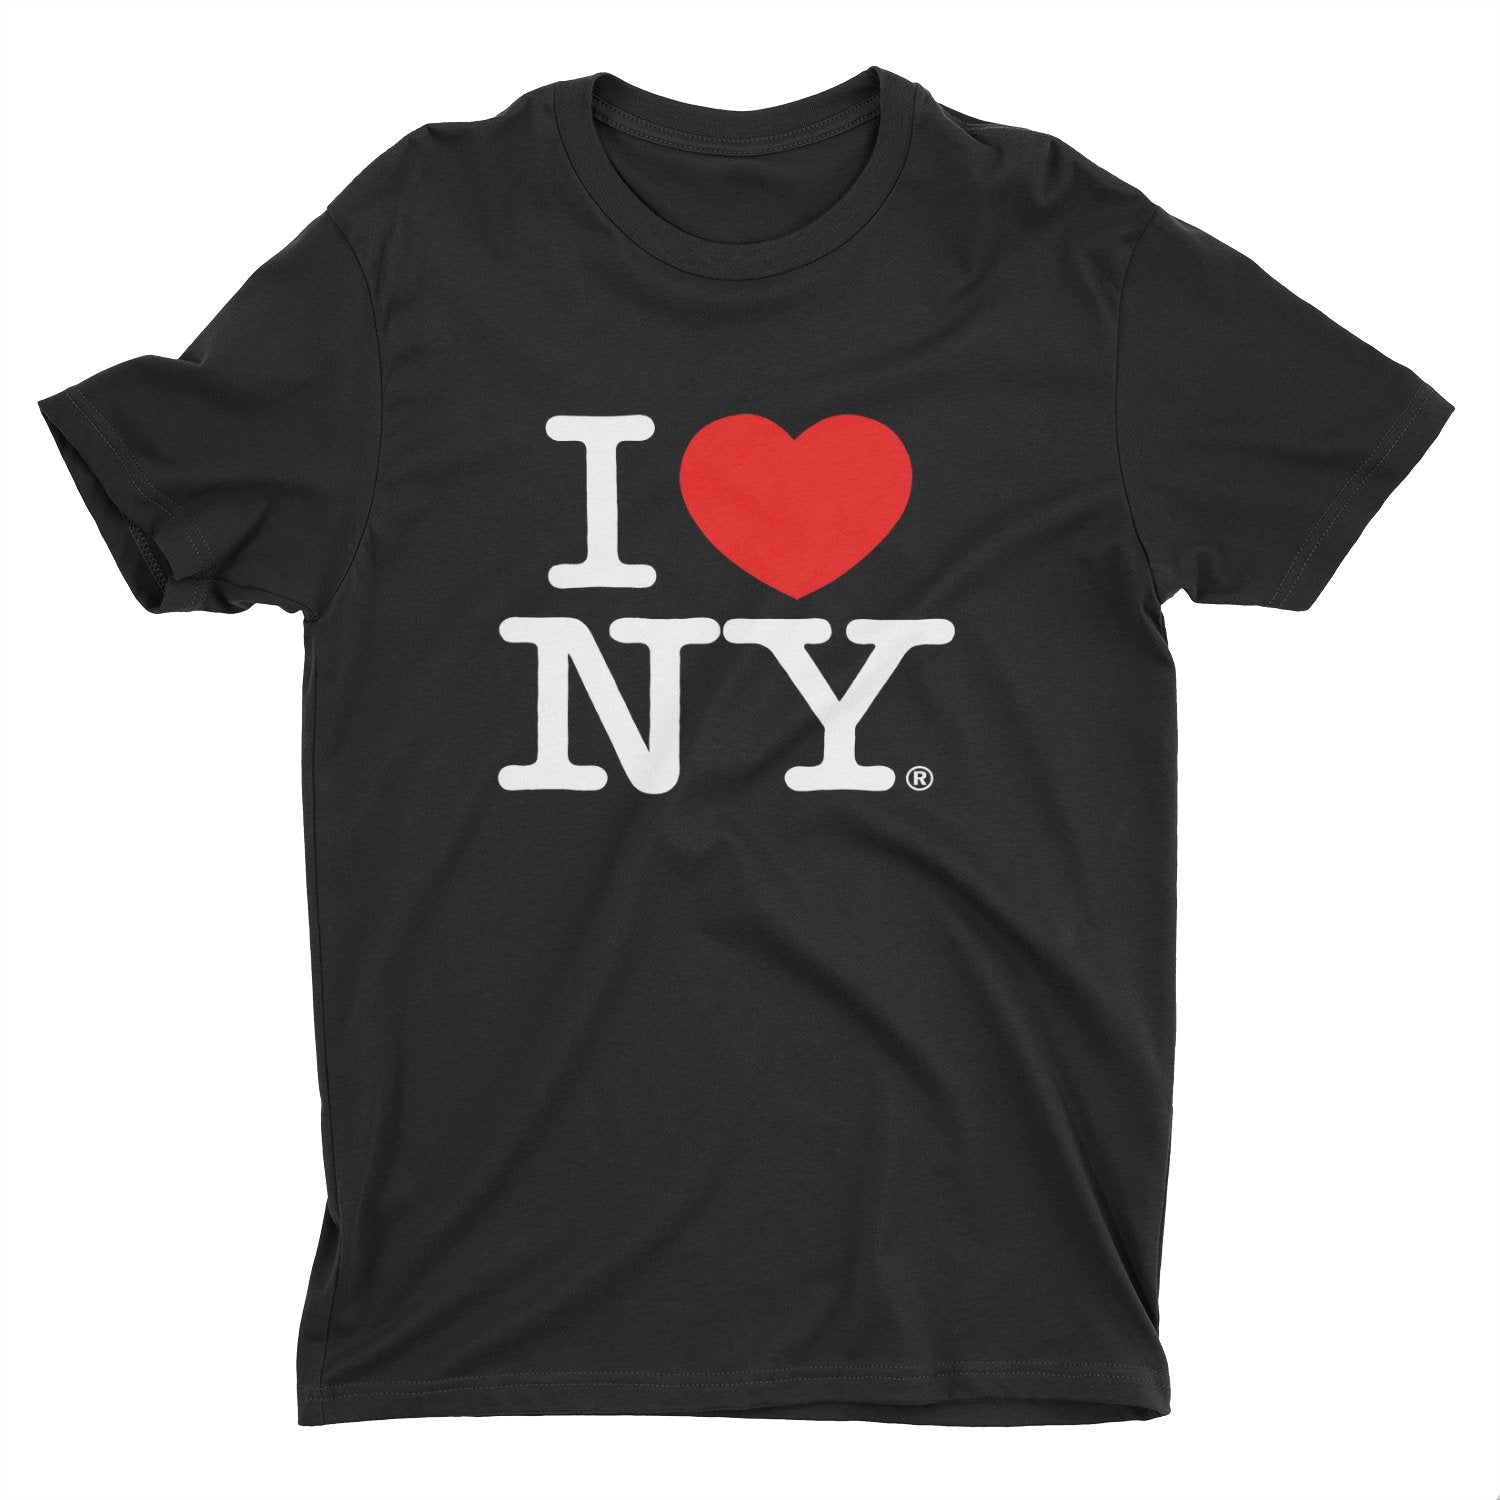 I Love NY New York Kids Short Sleeve Screen Print Heart T-Shirt Black